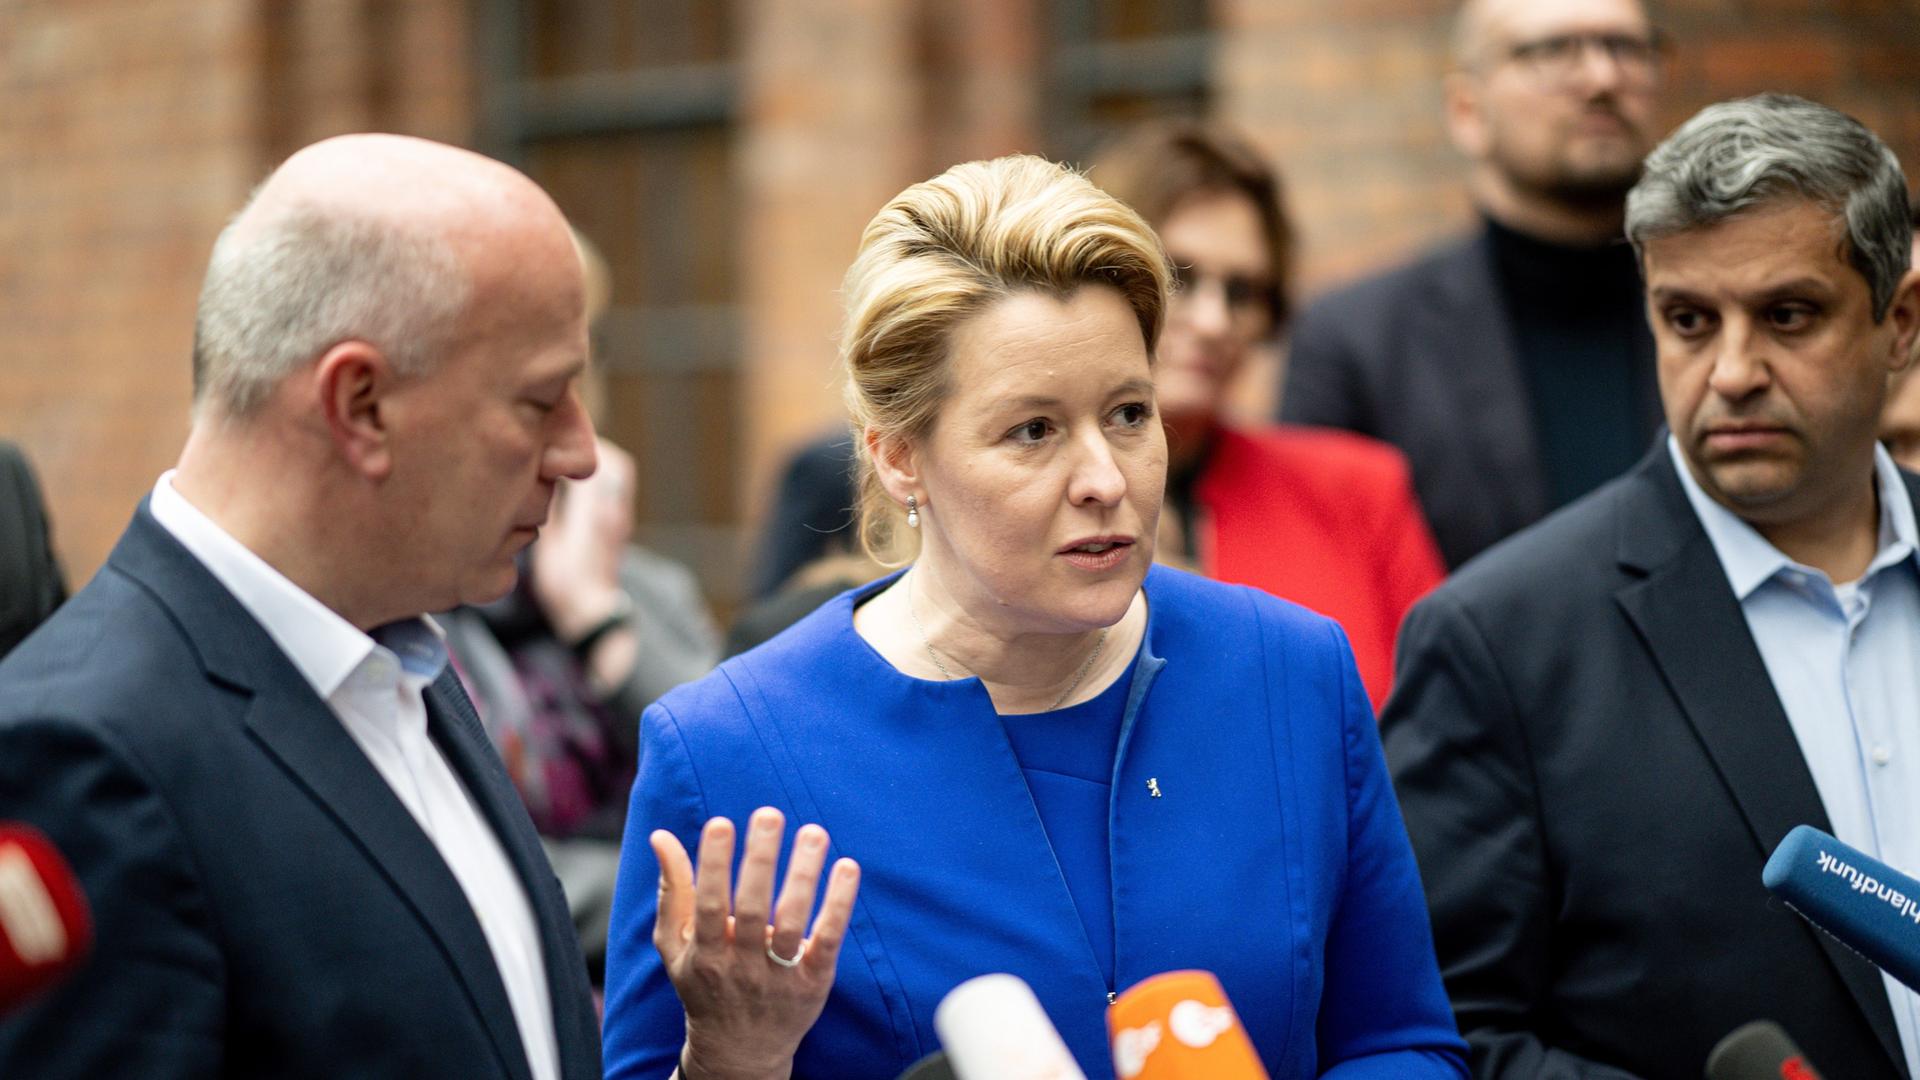 Kai Wegner (CDU), Vorsitzender, und Franziska Giffey (SPD), Regierende Bürgermeisterin von Berlin, kommen nach den Koalitionsverhandlungen von CDU und SPD auf den Euref-Campus zu einem Statement.